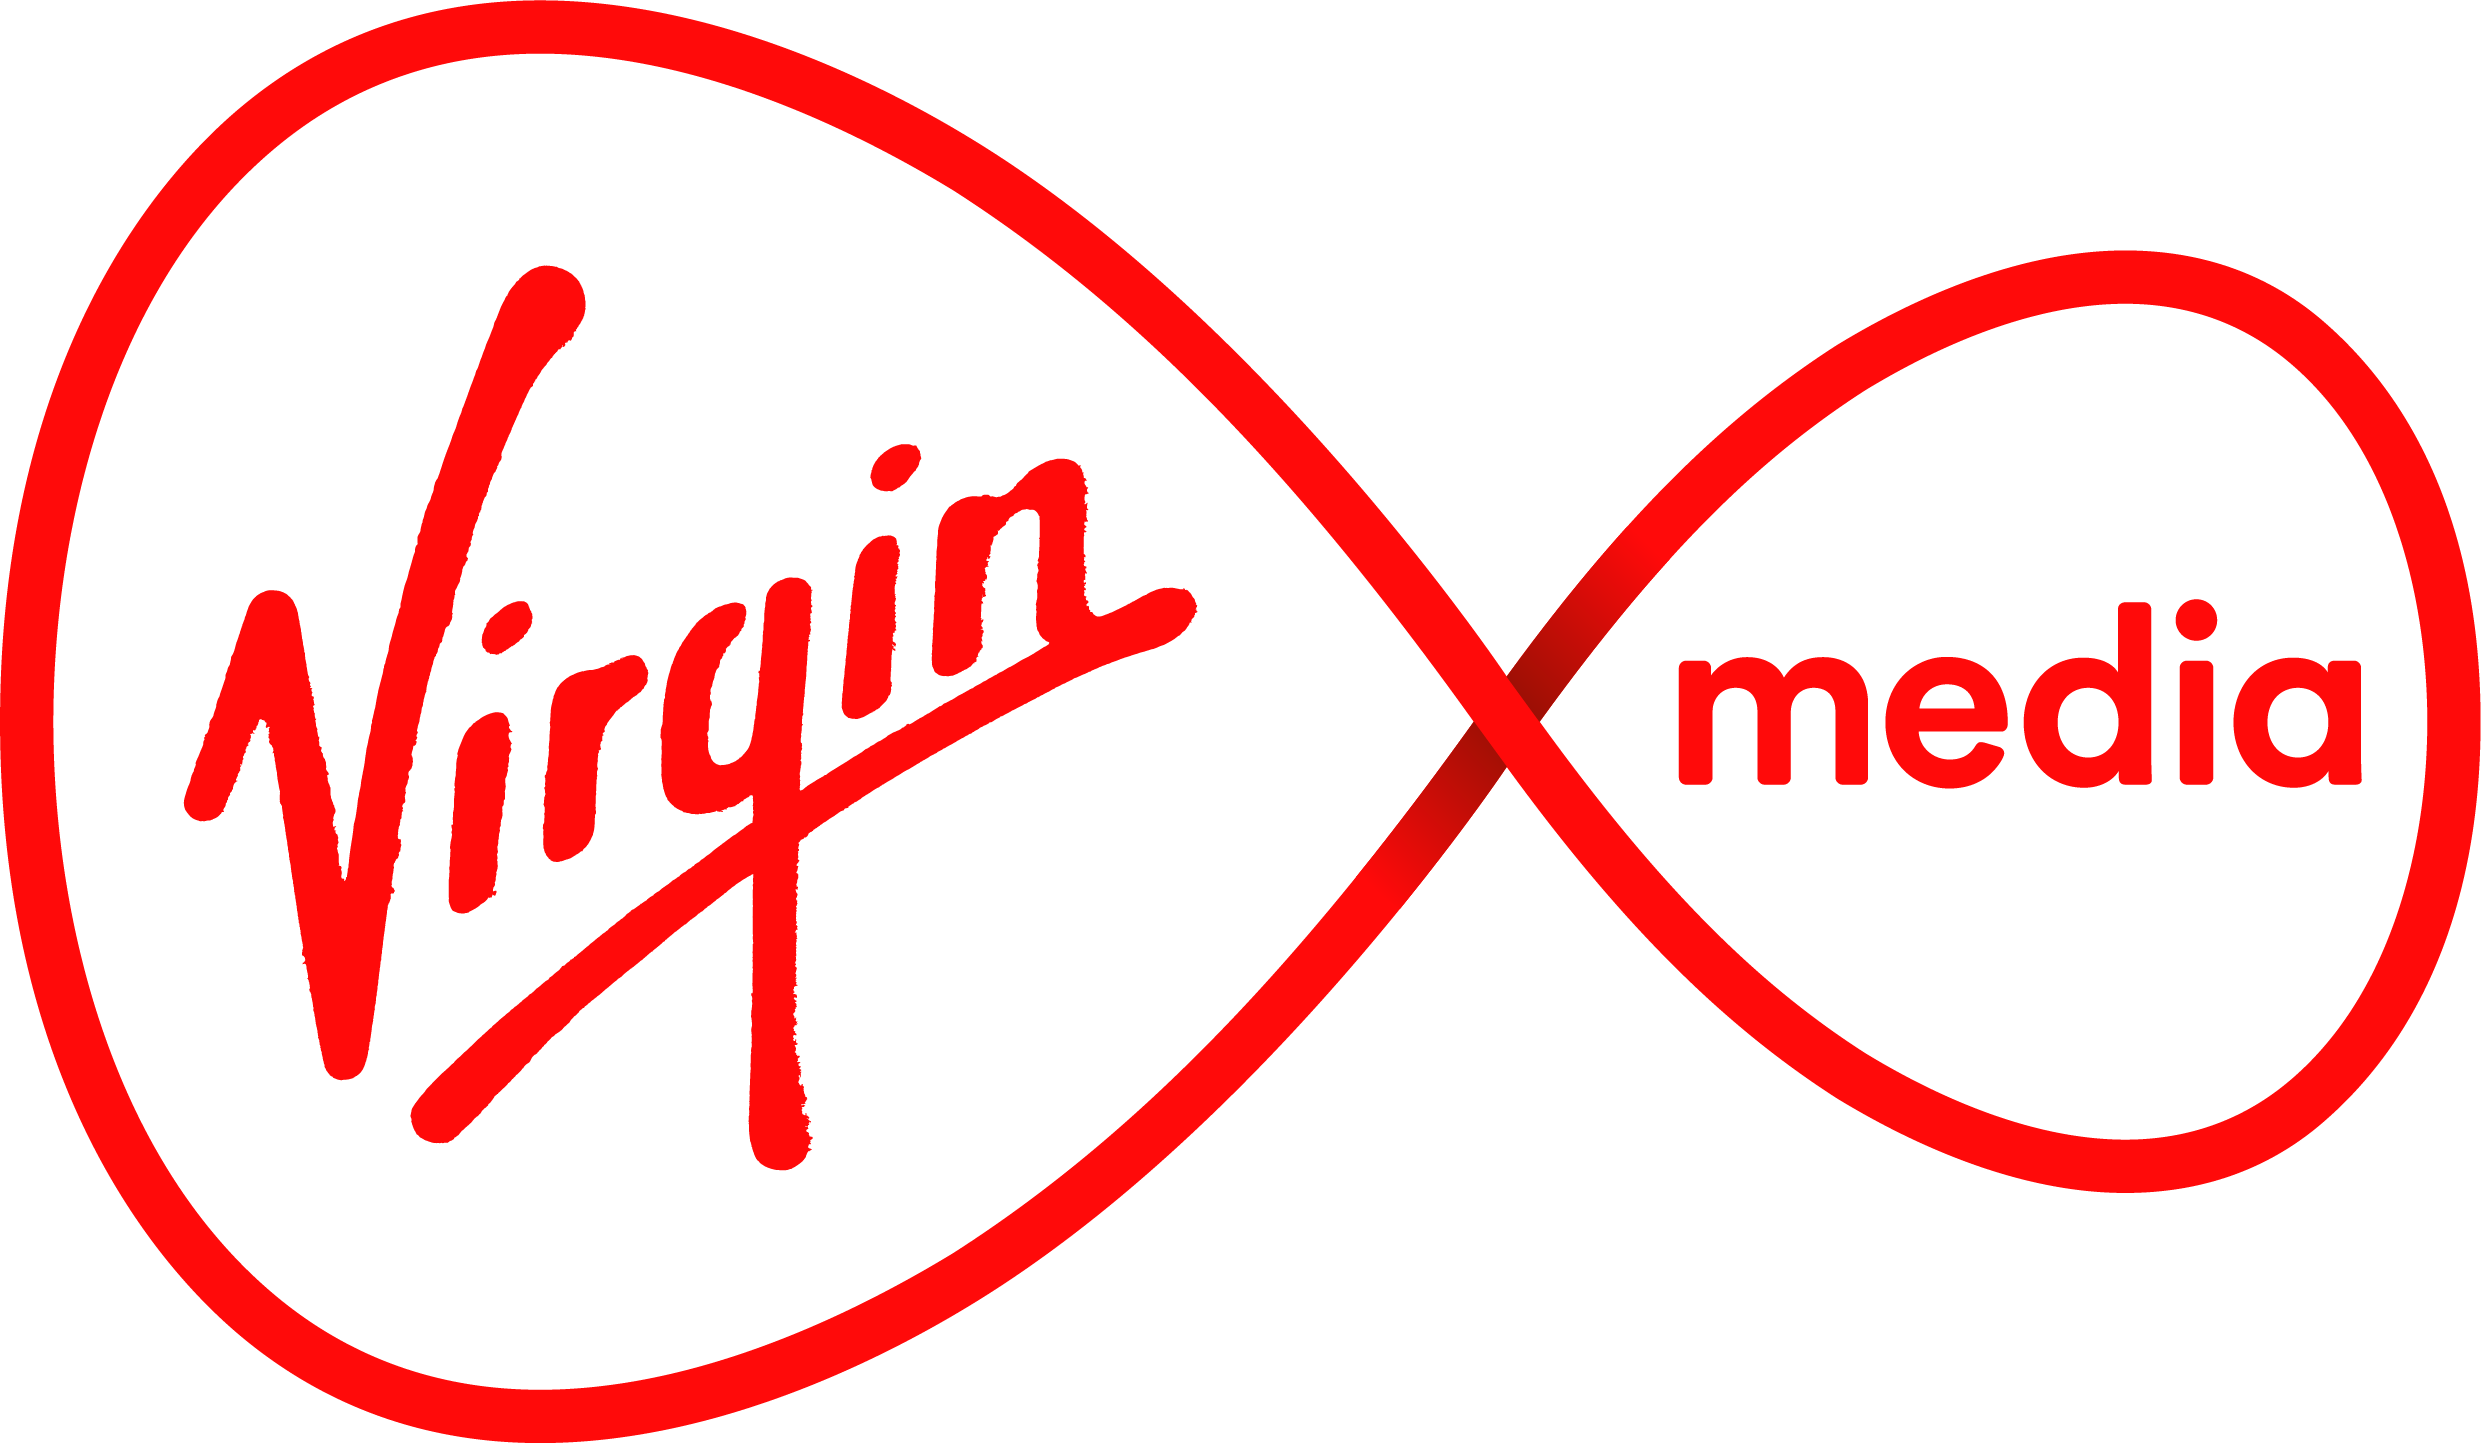 asurion logo